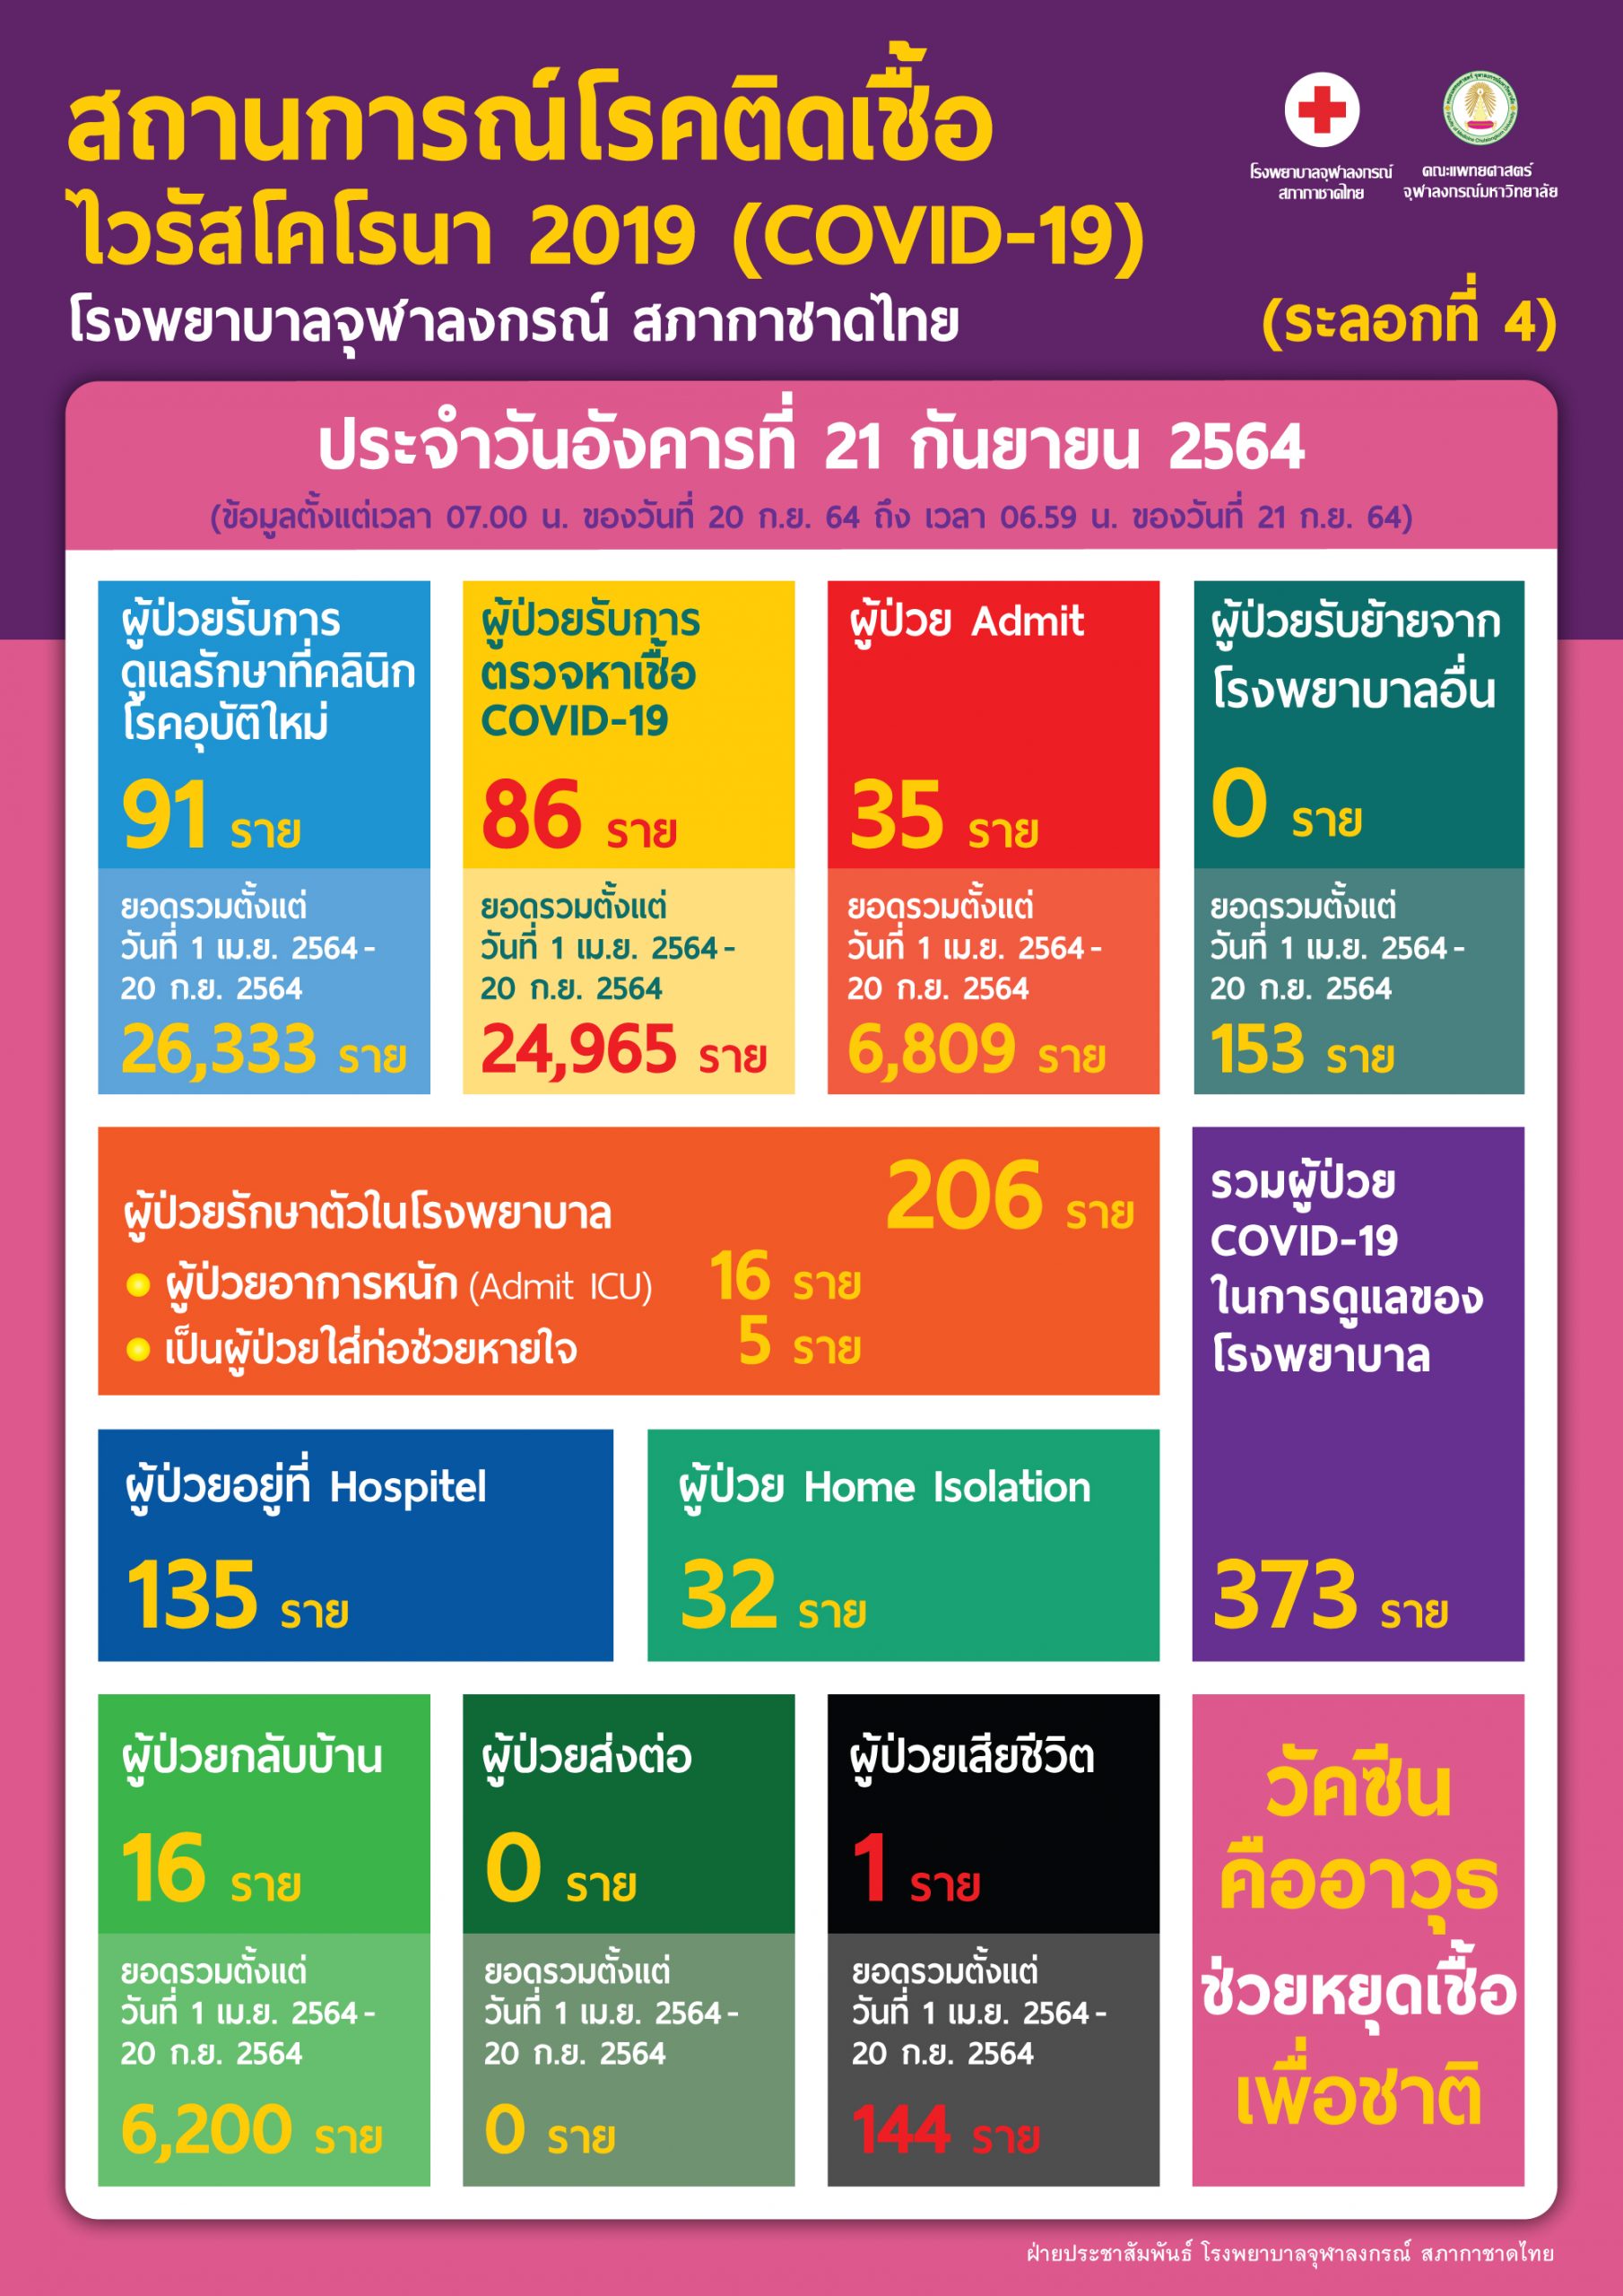 สถานการณ์โรคติดเชื้อไวรัสโคโรนา 2019 (COVID-19) (ระลอกที่ 4) โรงพยาบาลจุฬาลงกรณ์ สภากาชาดไทย  ประจำวันอังคารที่ 21 กันยายน 2564